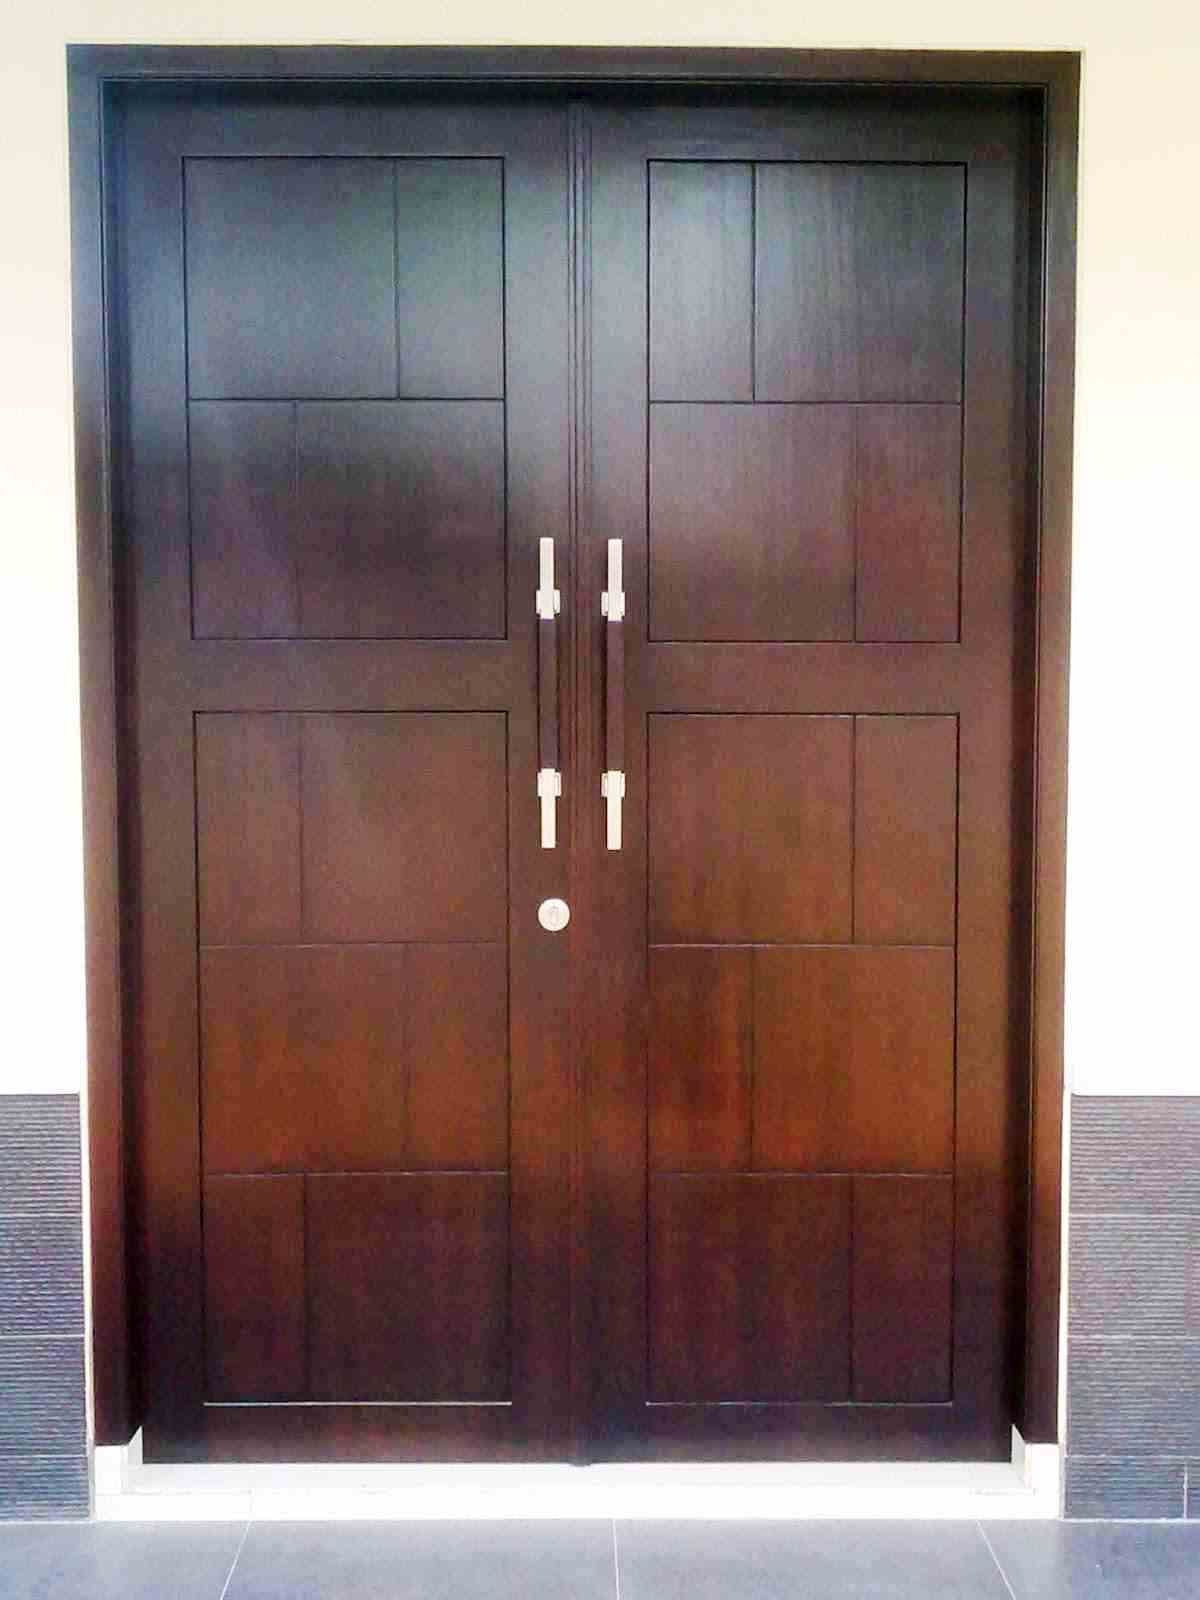  Pintu  Lengkung Kaca UPVC Jakarta Murah 0818 9800 95